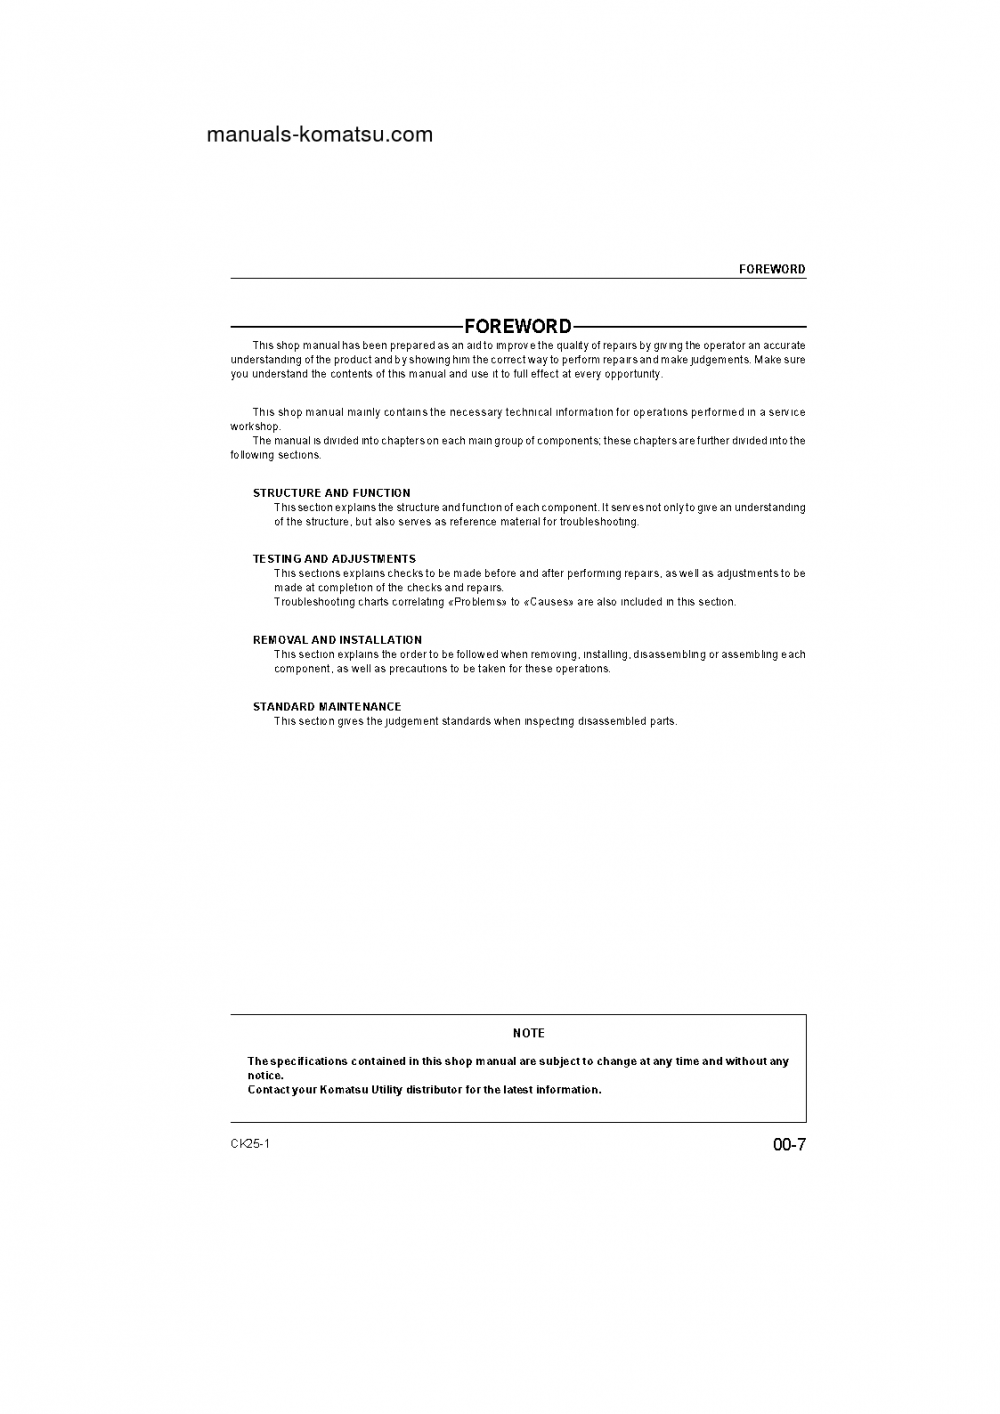 Protected: CK25-1(ITA) S/N F00003- Shop (repair) manual (English)